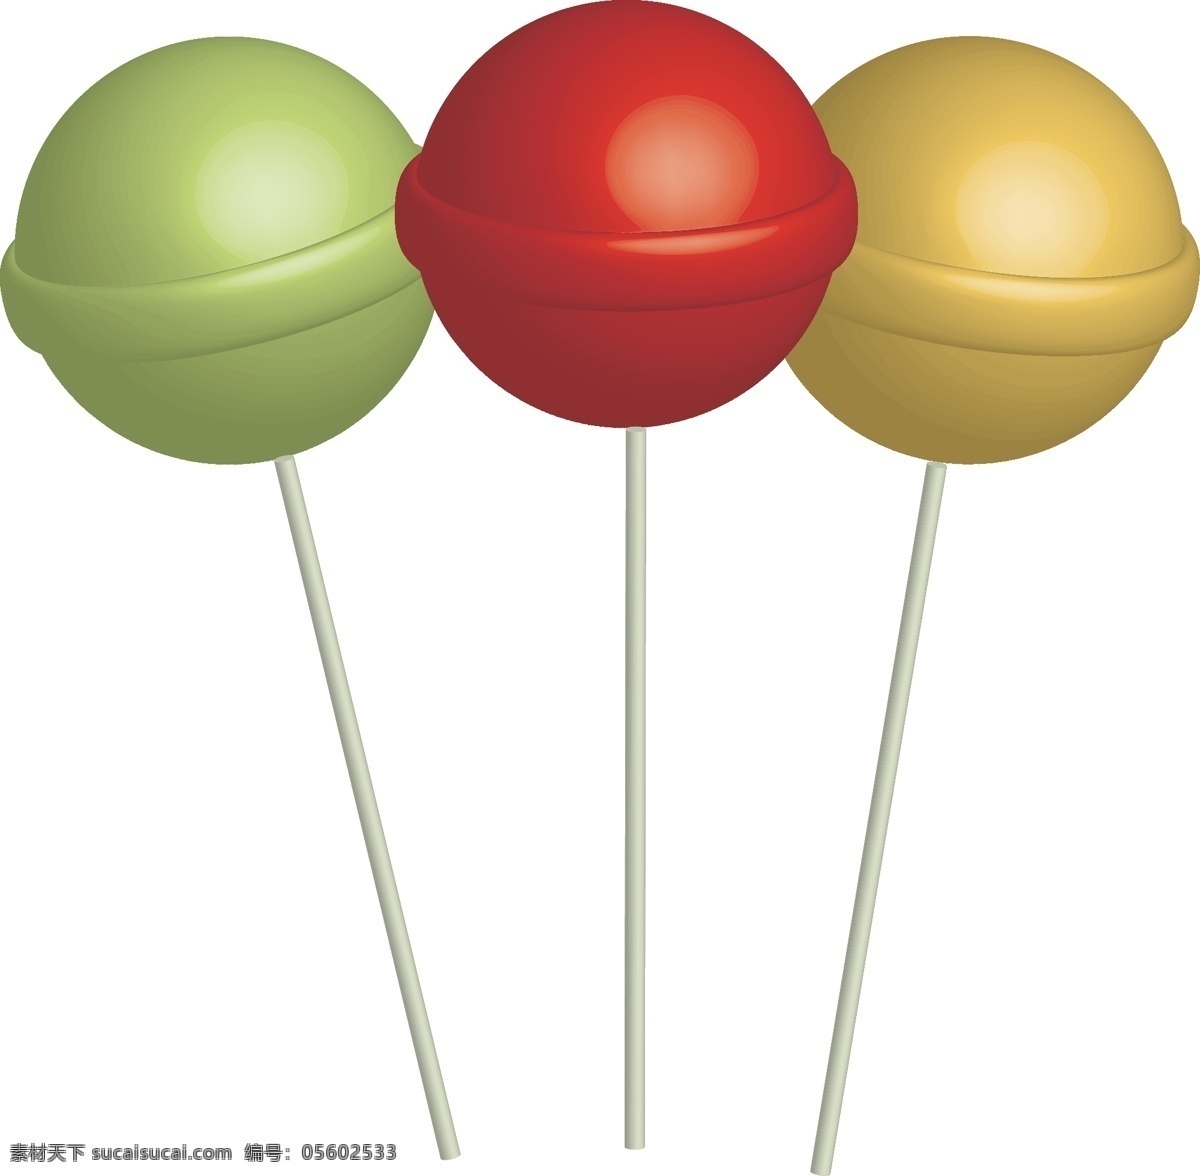 矢量 手绘 水果 棒棒糖 红色 黄色 绿色 糖果 糖块 甜食 食物 卡通 形状 圆形 免扣 三个